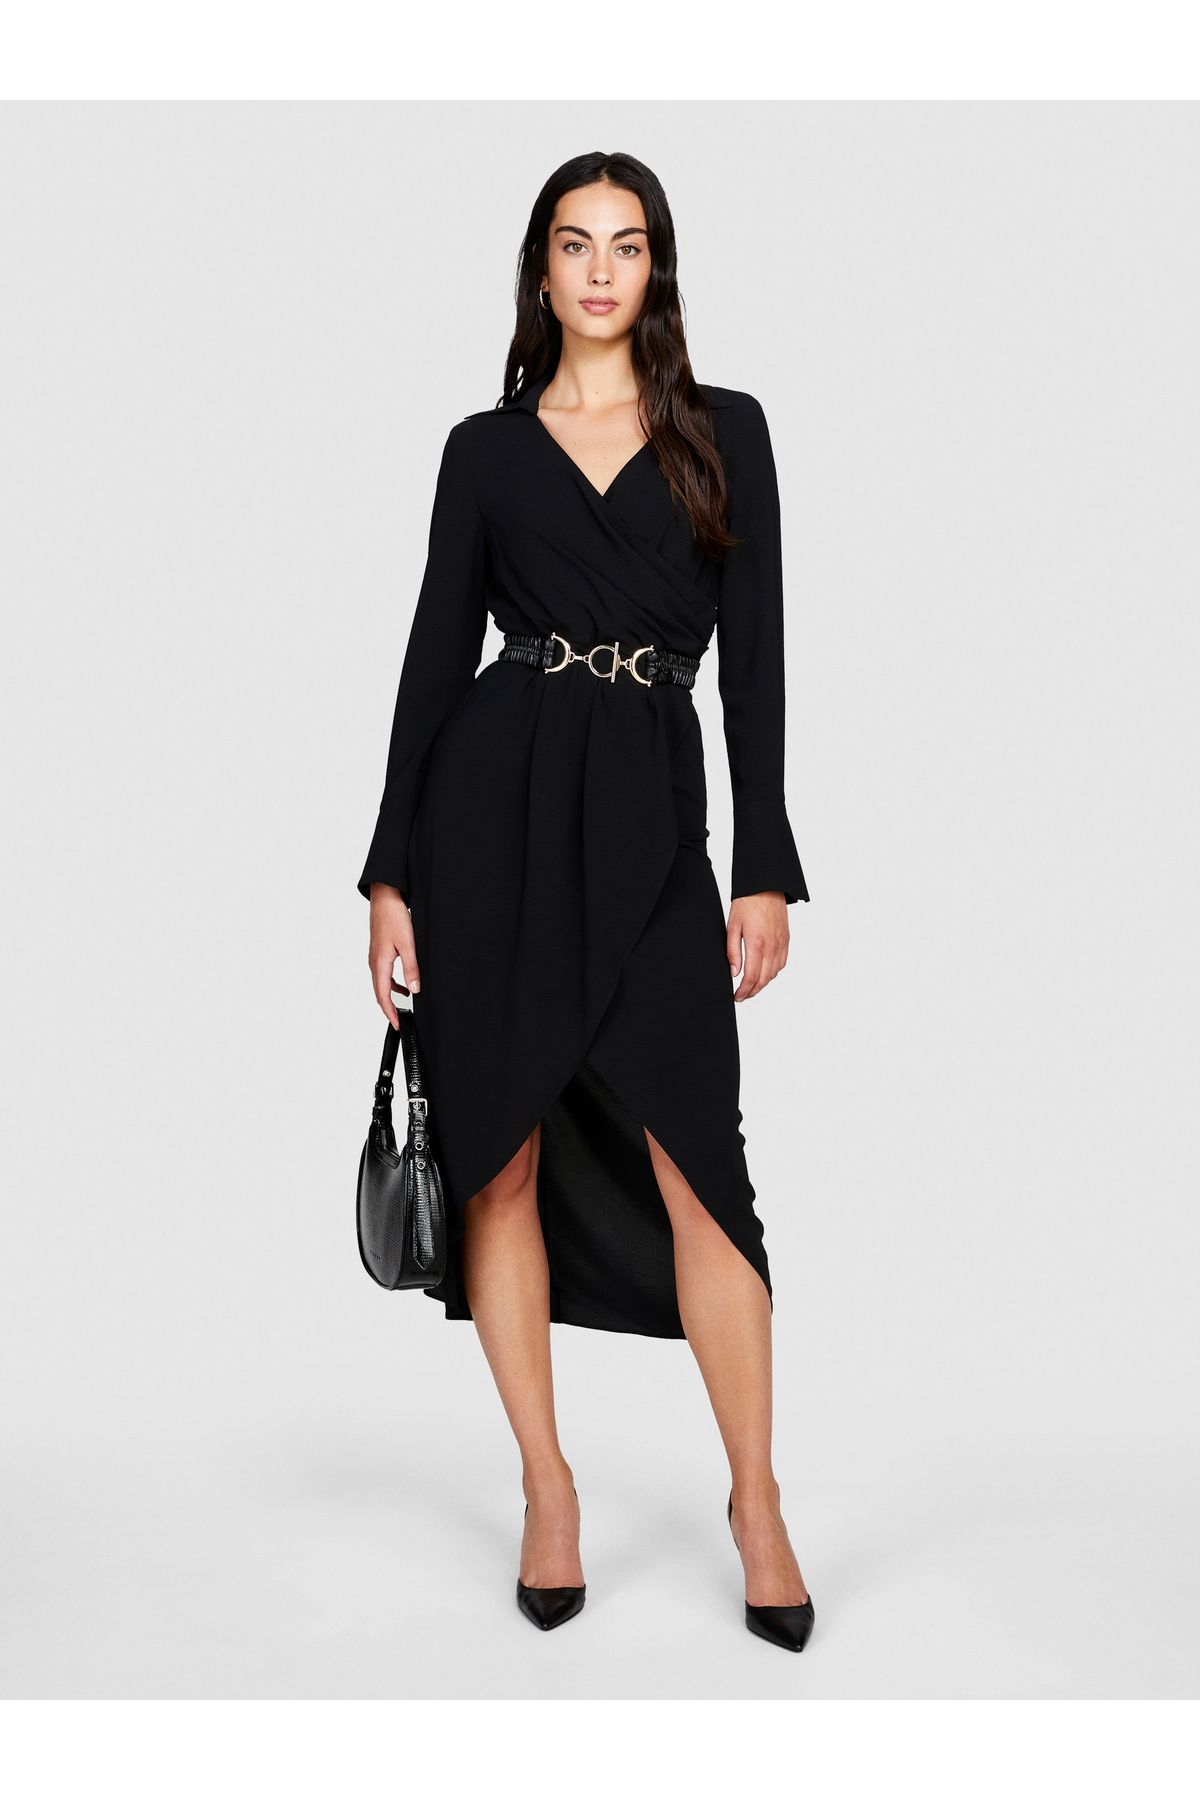 Sisley Kadın Siyah Uzun Kollu Beli Büzgülü Gömlek V Yaka Anvelop Elbise